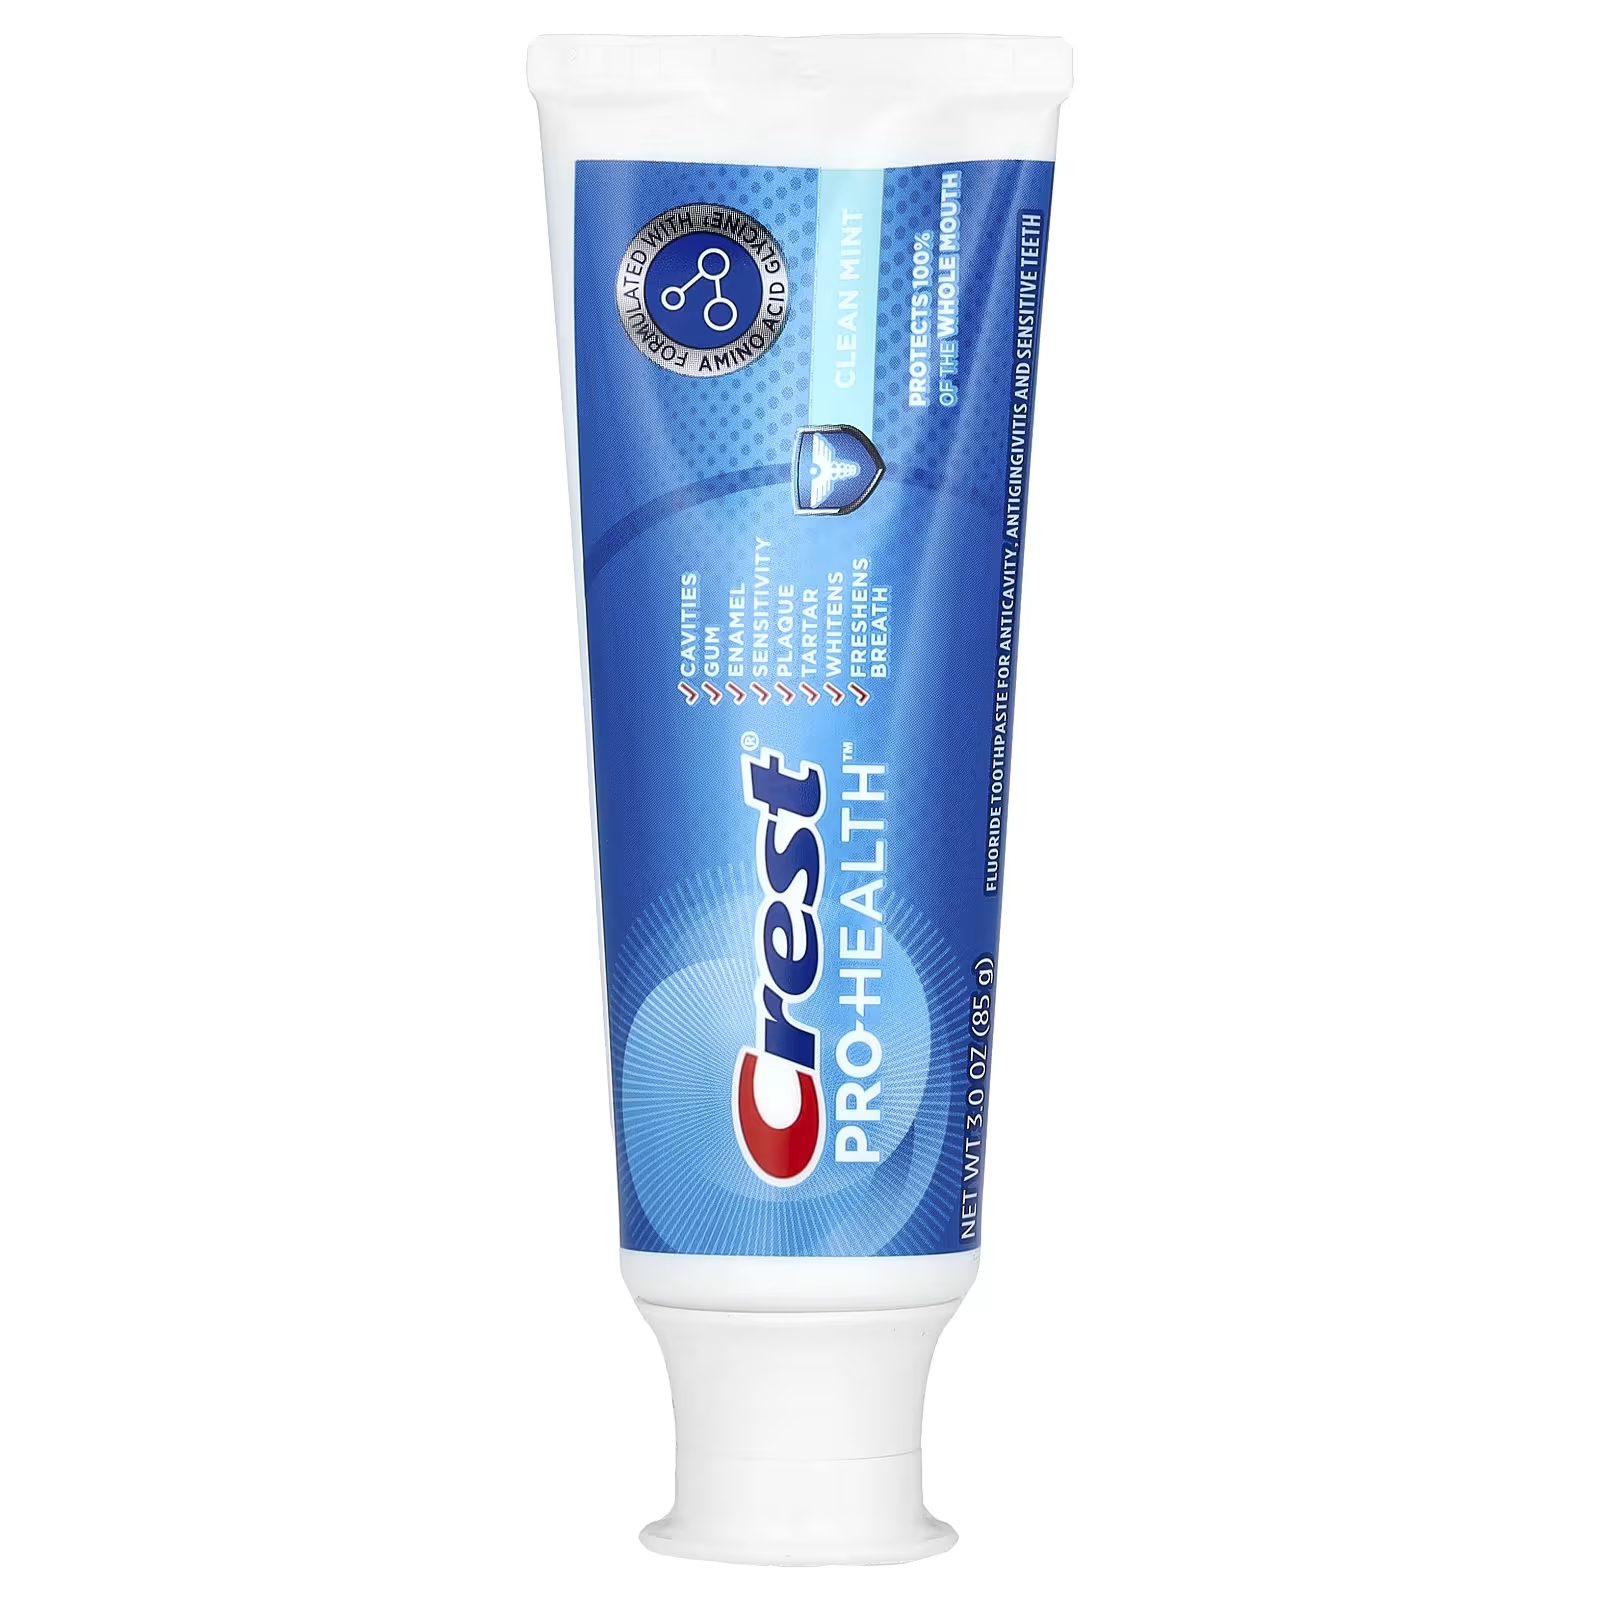 Зубная паста с фтором Crest Pro-Health чистая мята, 85 г пищевая сода зубная паста 232 г crest